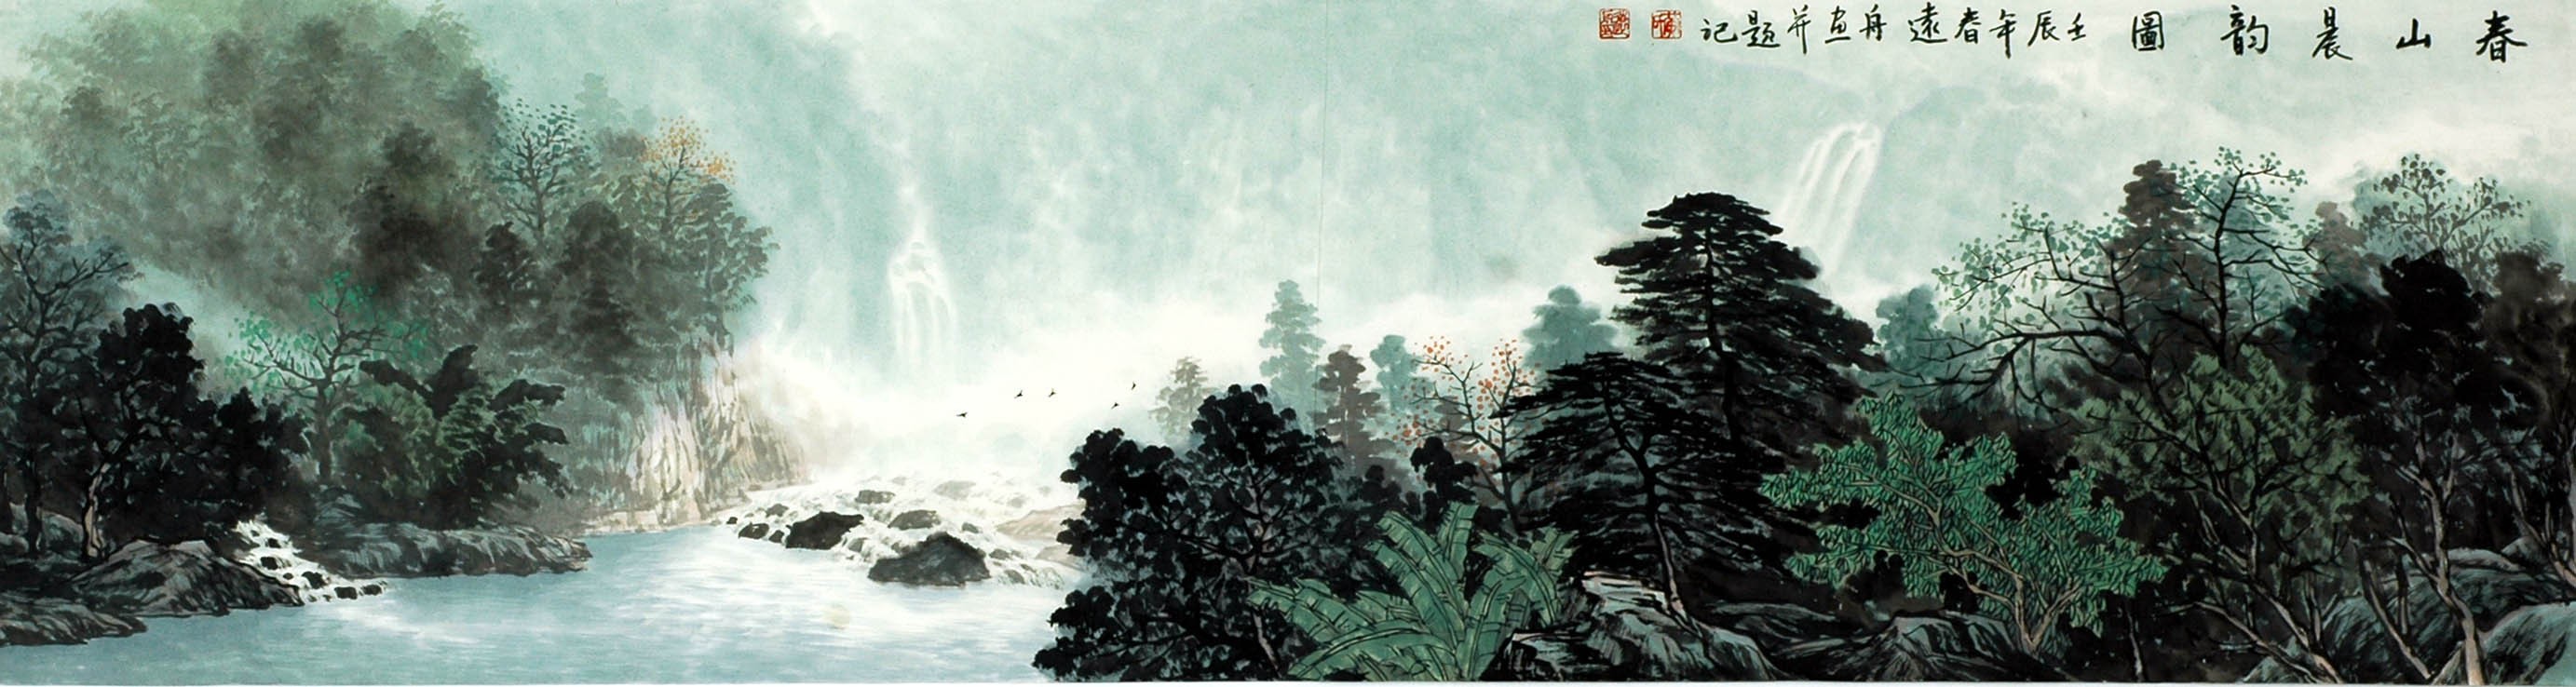 Chinese Landscape Painting - CNAG008339